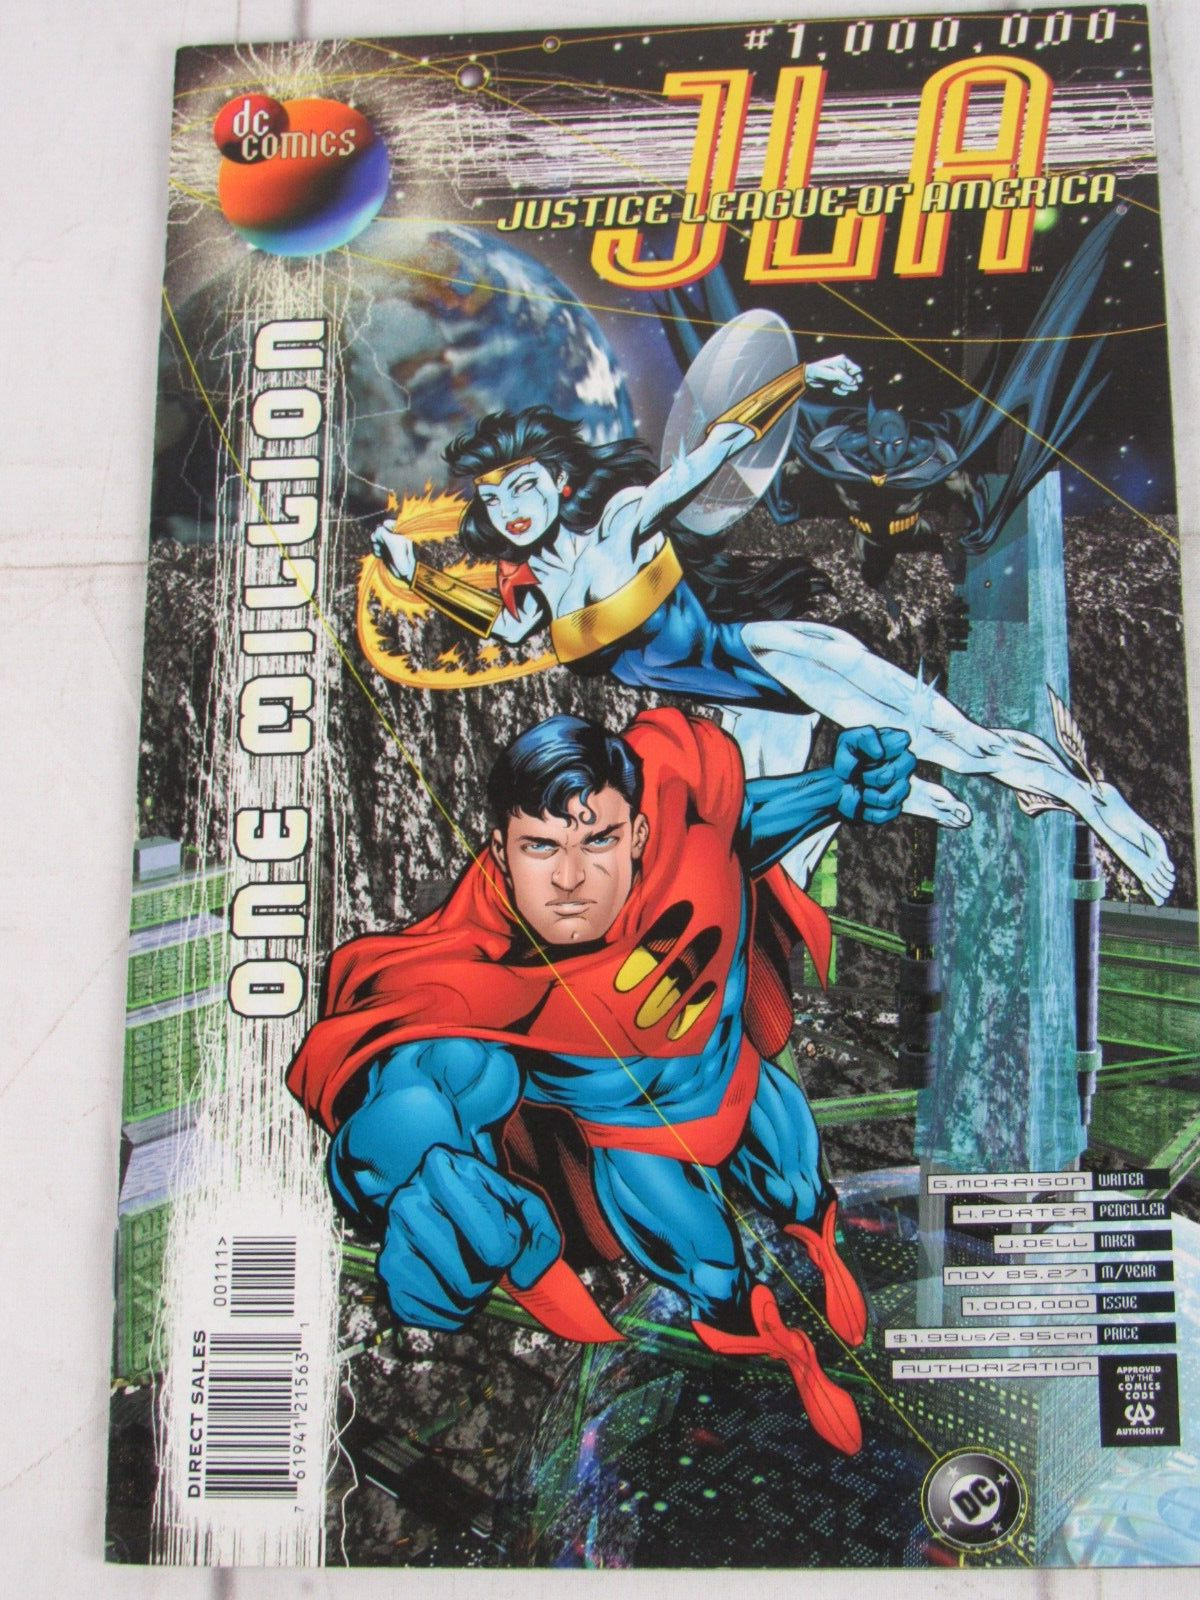 JLA Special #1,000,000 Nov. 1998 DC Comics